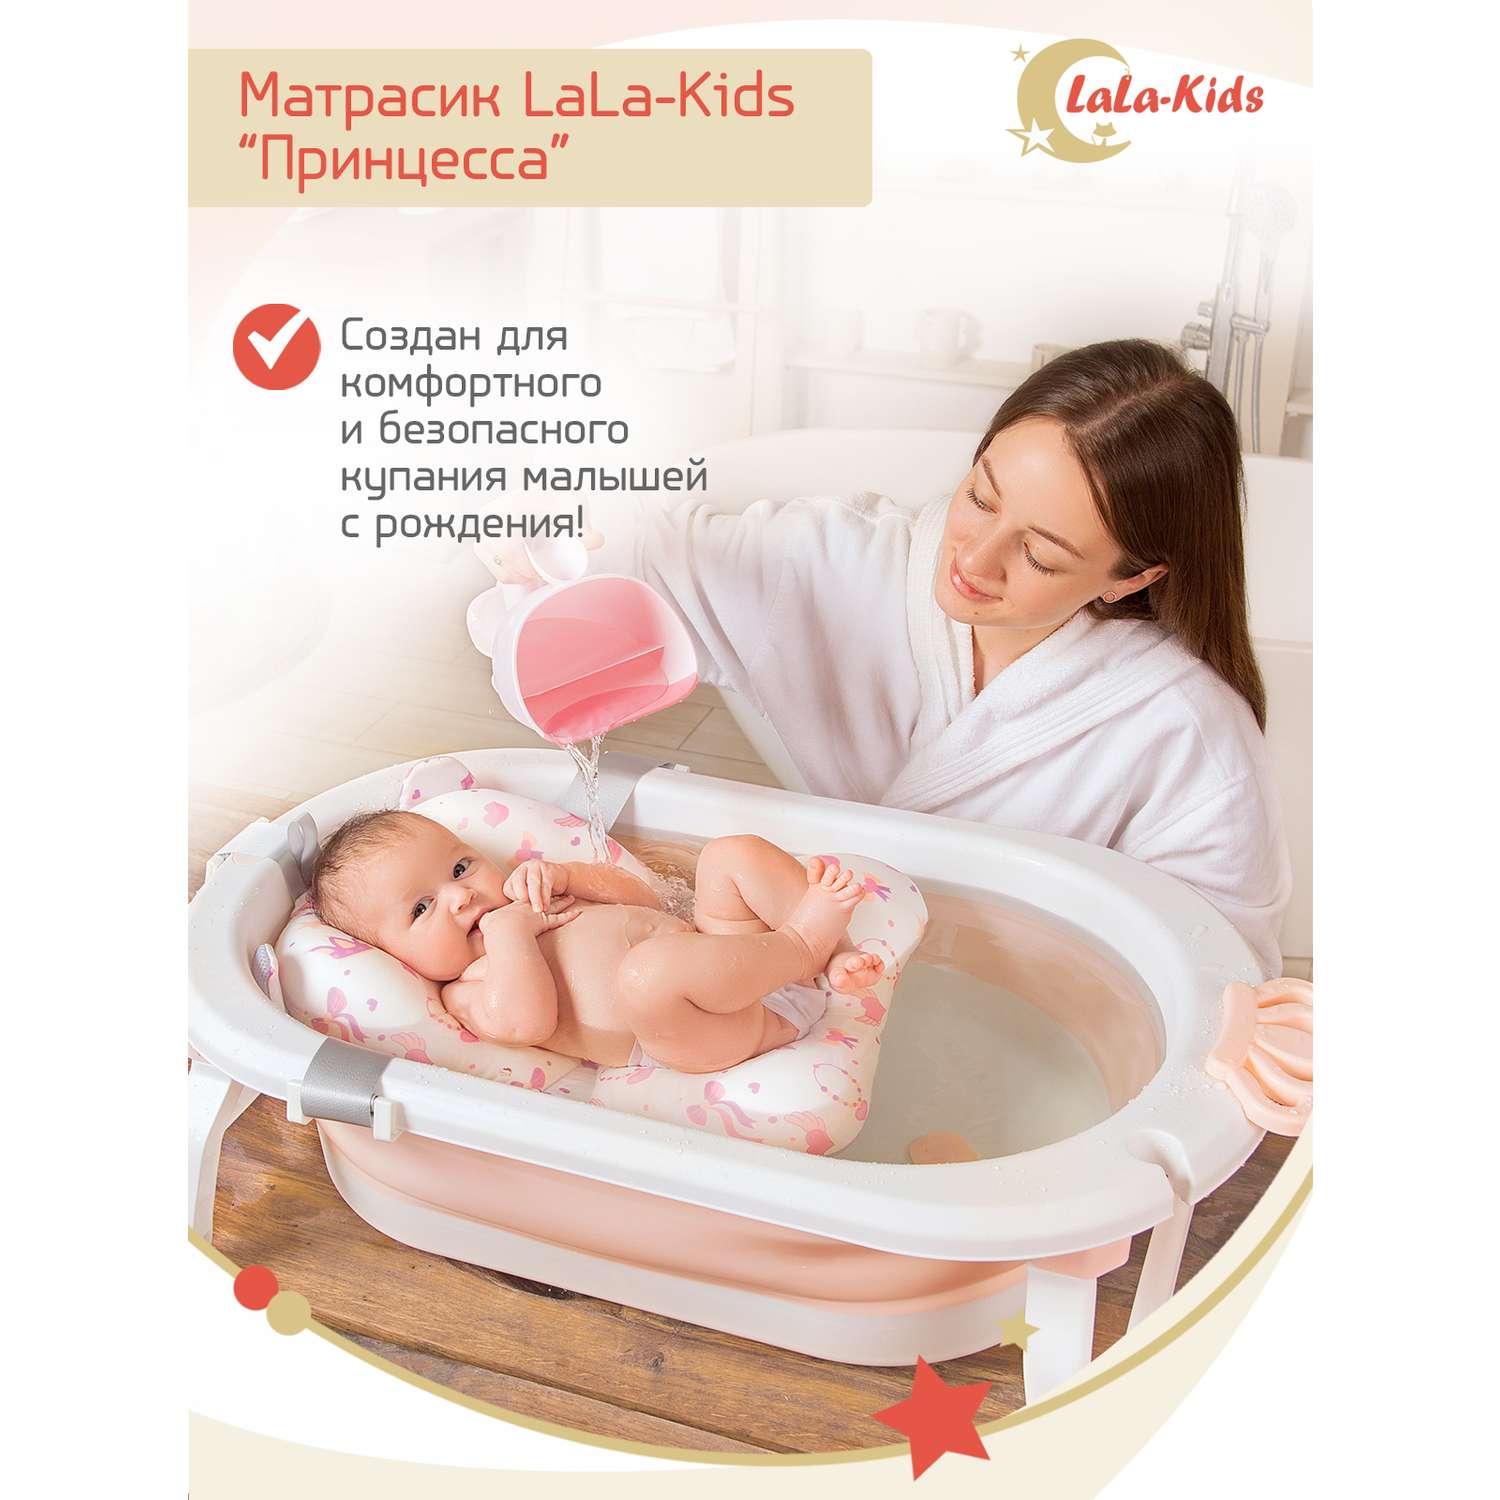 Матрас LaLa-Kids для купания новорожденных - фото 3